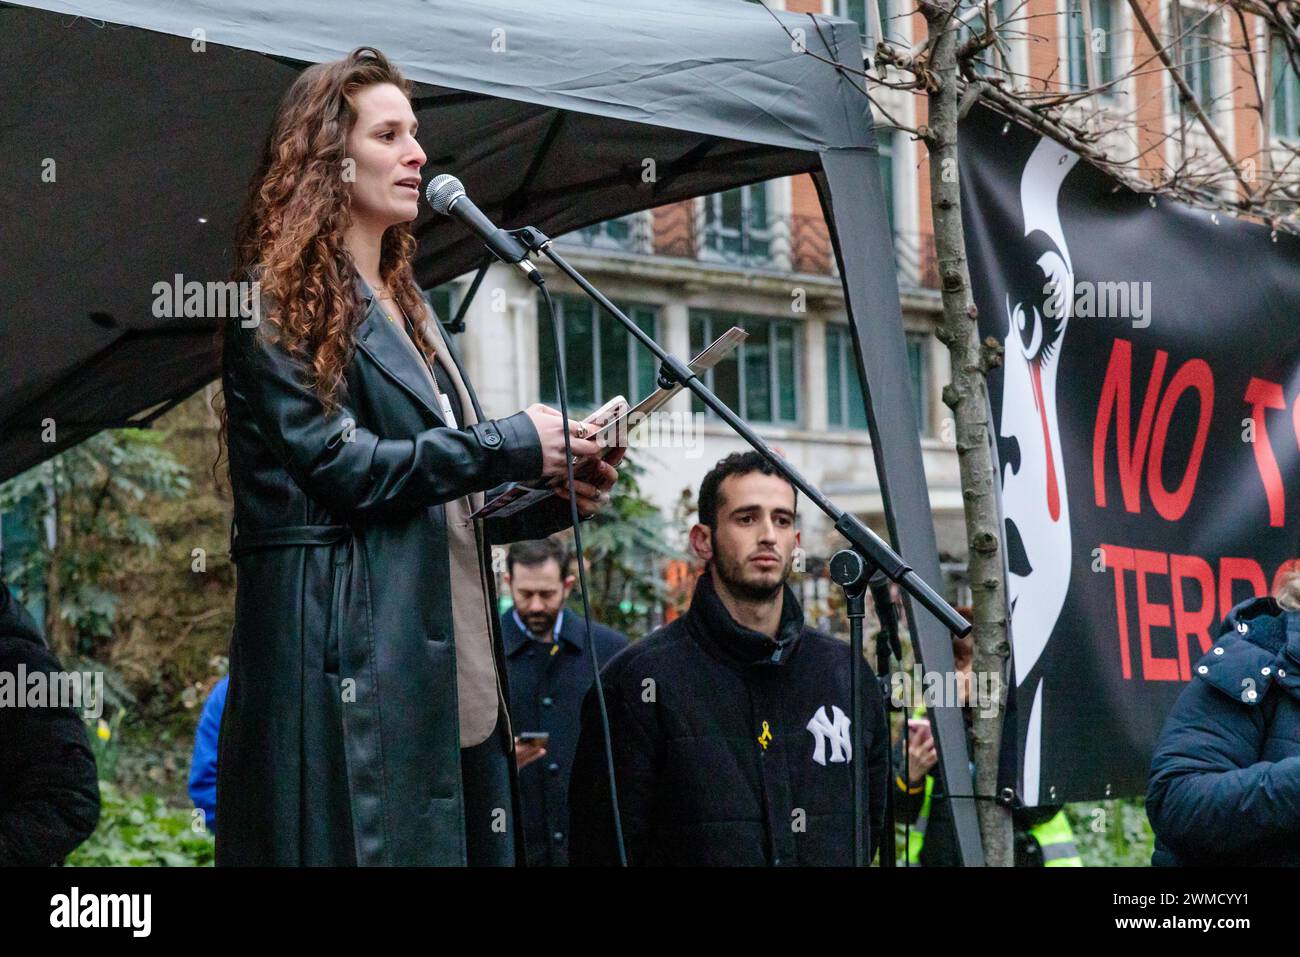 Tavistock Square, Londres, Reino Unido. 25 de febrero de 2024. Hila Vakliro, de 26 años, una de las sobrevivientes de la masacre del 7 de octubre del festival de música “NOVA”, y amiga de los rehenes, Noa Argamani, hablando en el lugar de uno de los peores ataques terroristas de Londres, el atentado de 7/7, hablando en la manifestación 'No al terror' en Londres. Foto de Amanda Rose/Alamy Live News Foto de stock